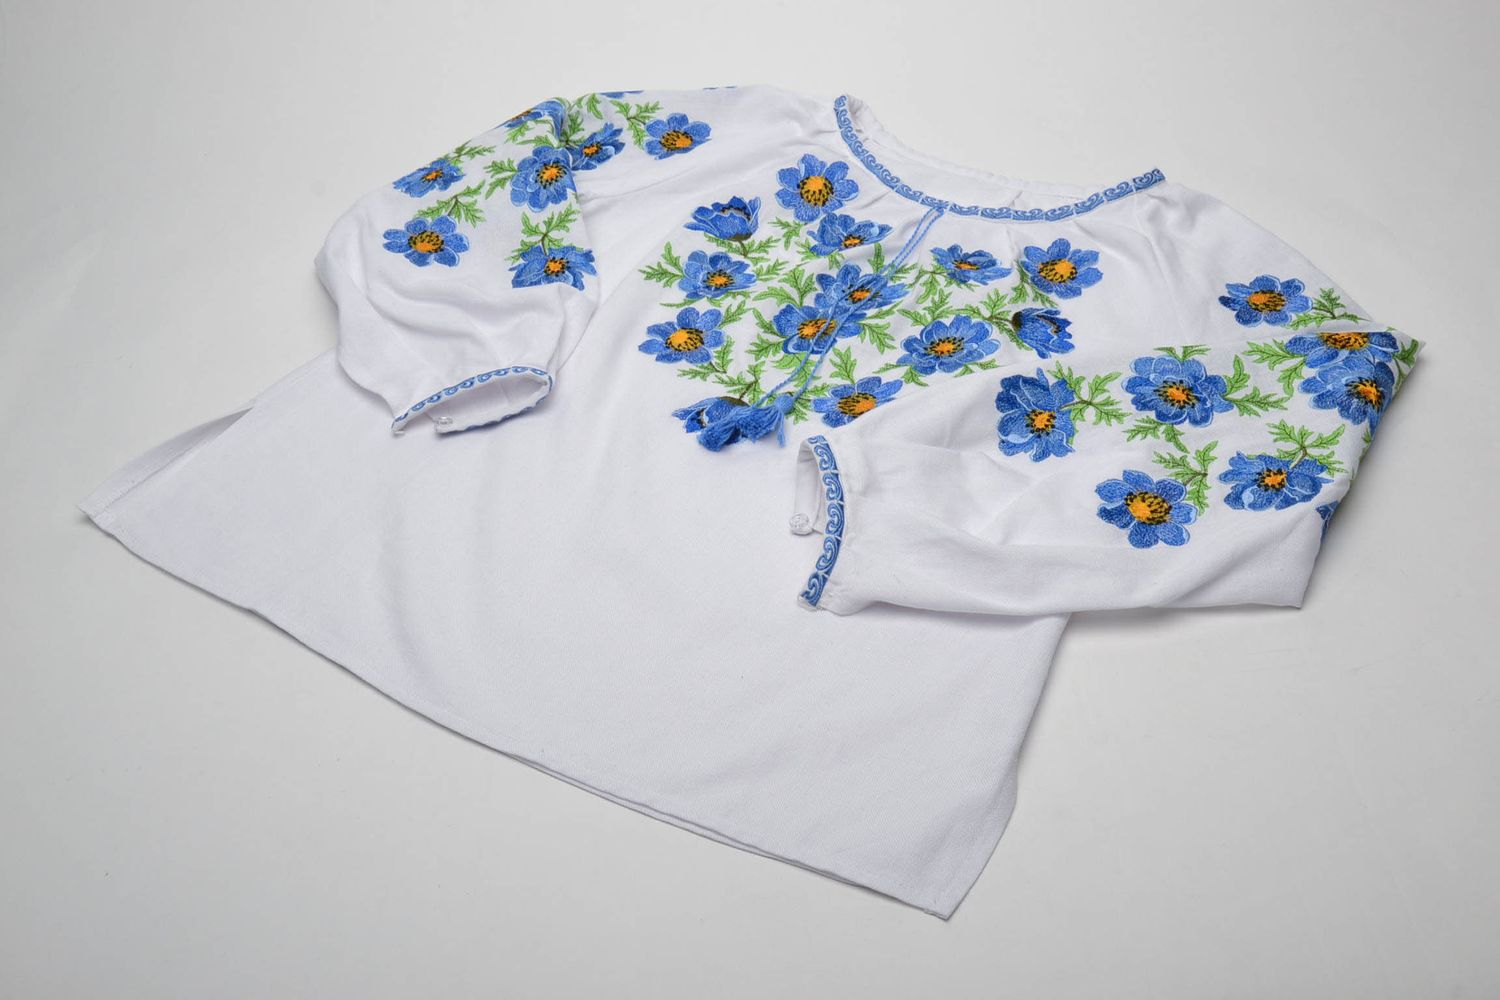 Camisa de lino bordada de realce con motivos florales foto 5